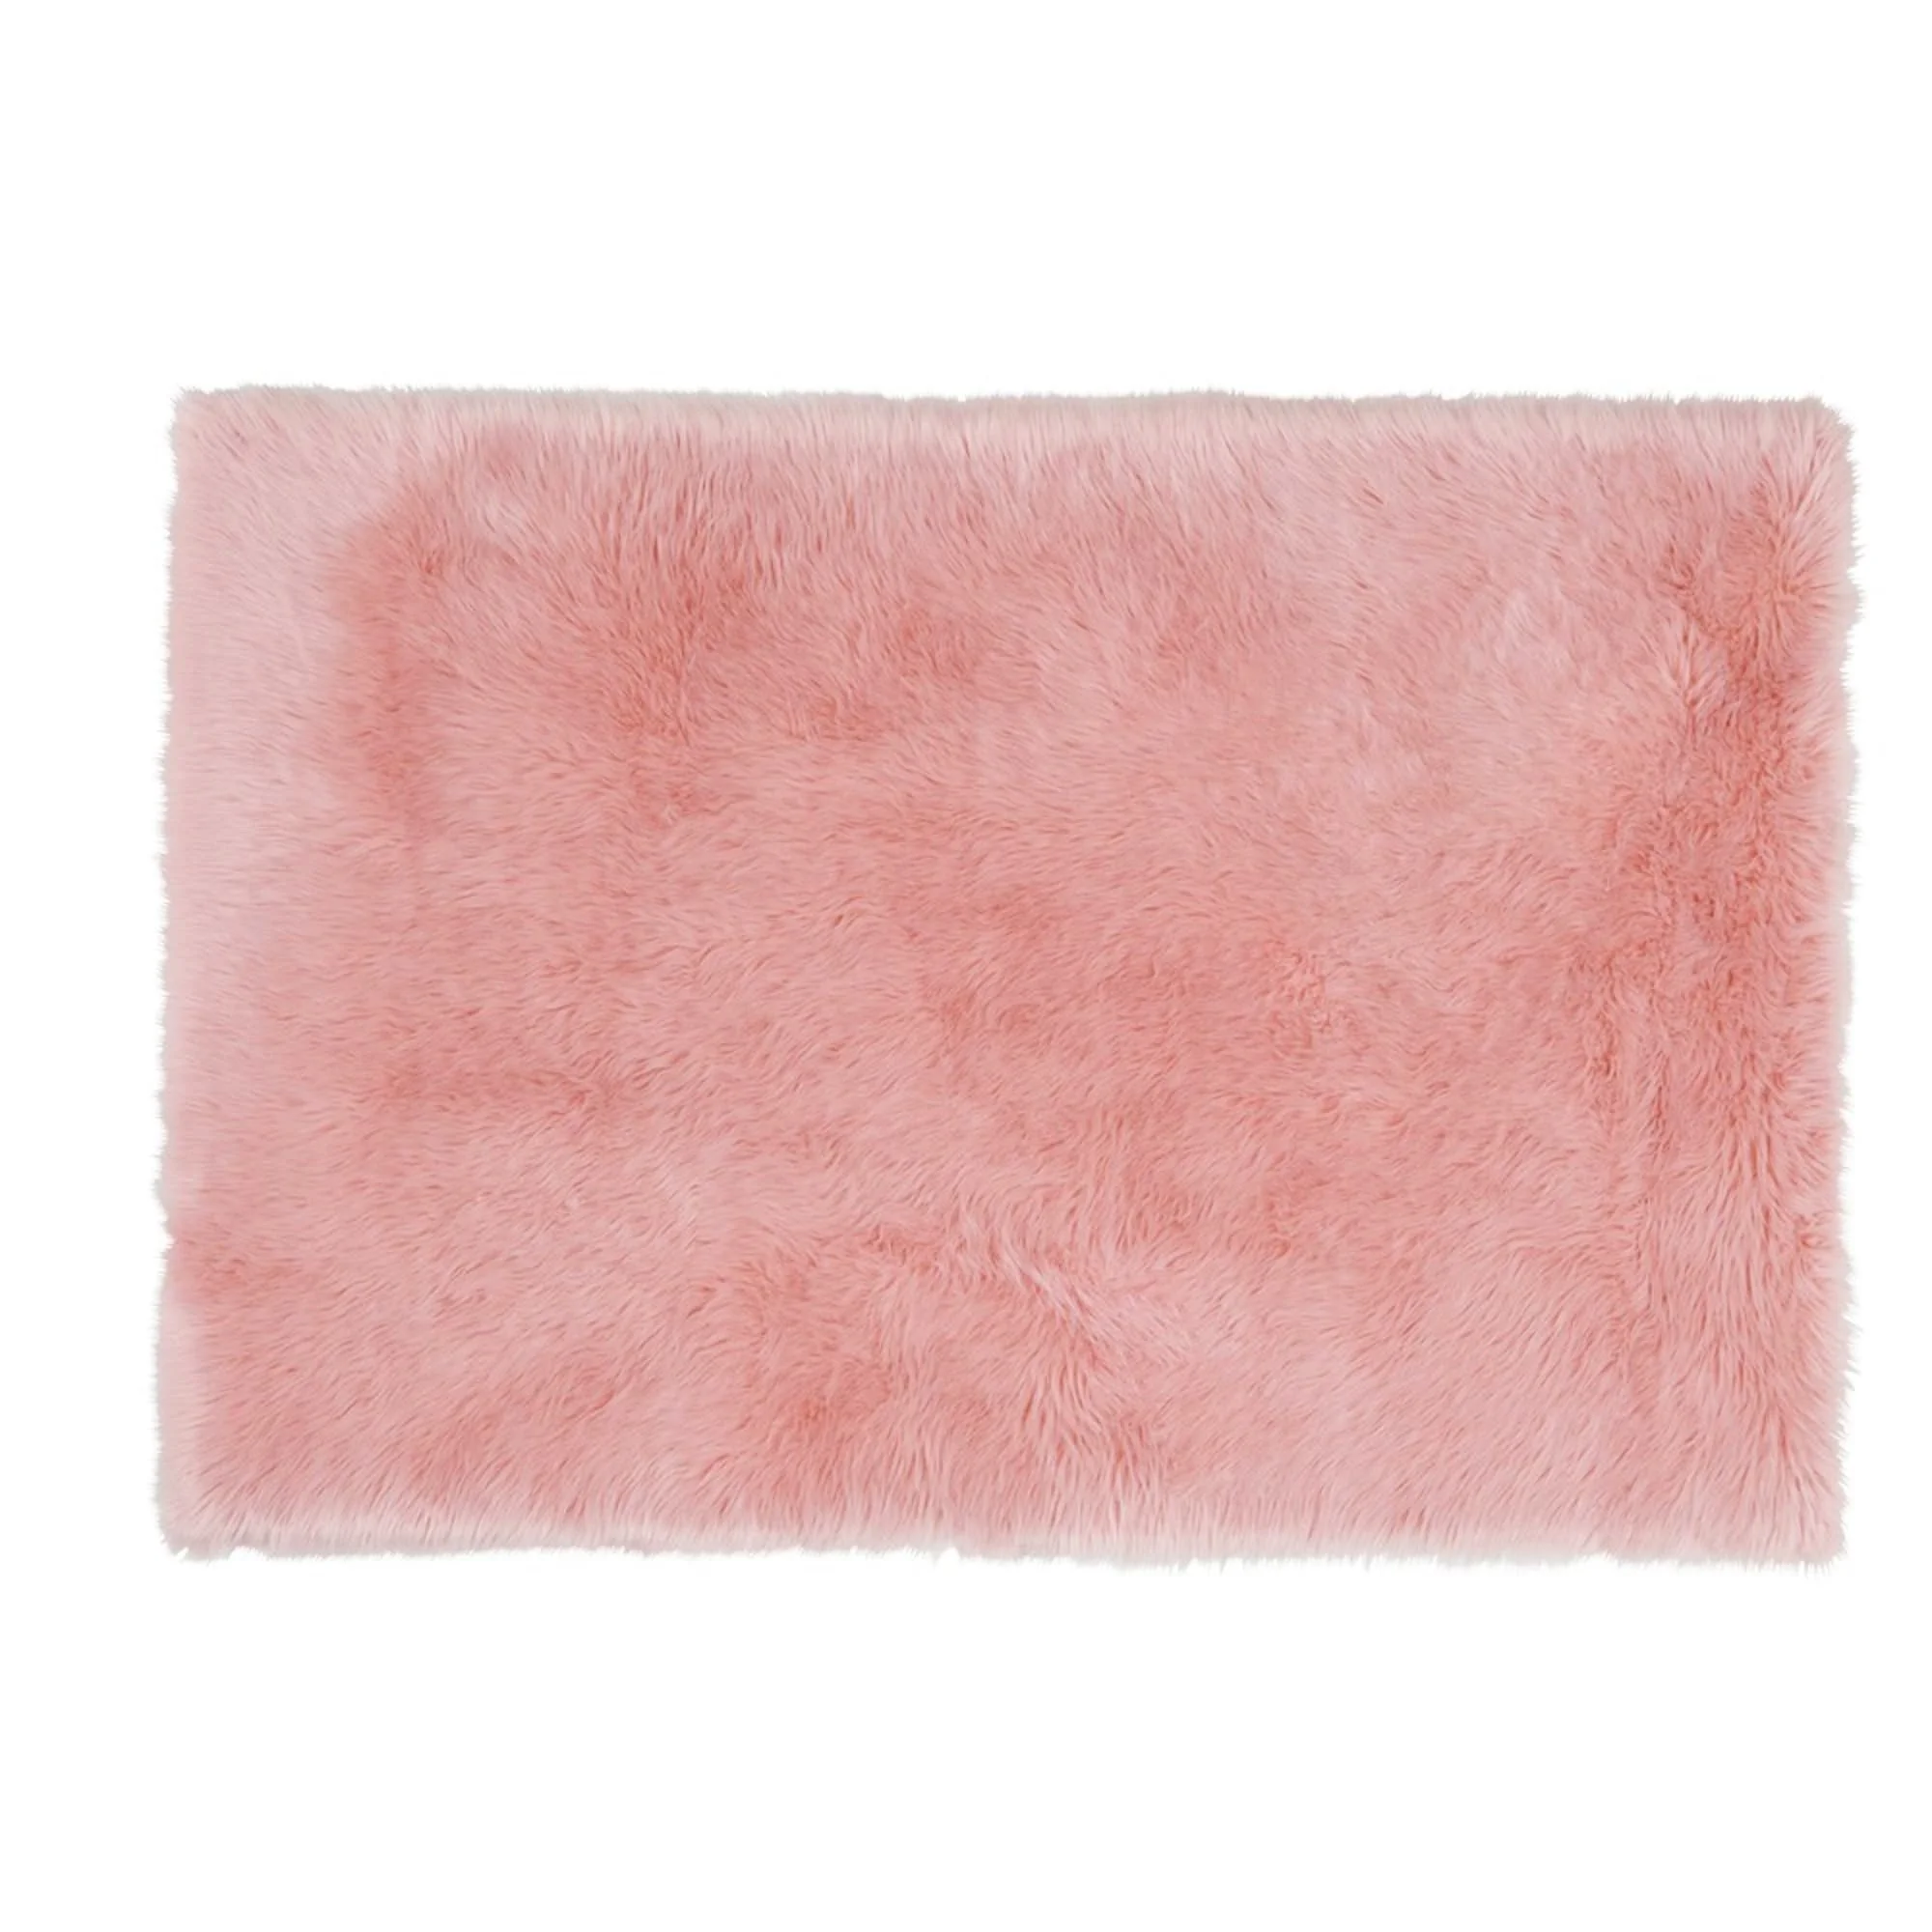 Plush 100% Mongolian Lambskin sheepskin Fur Rug Home Pink 